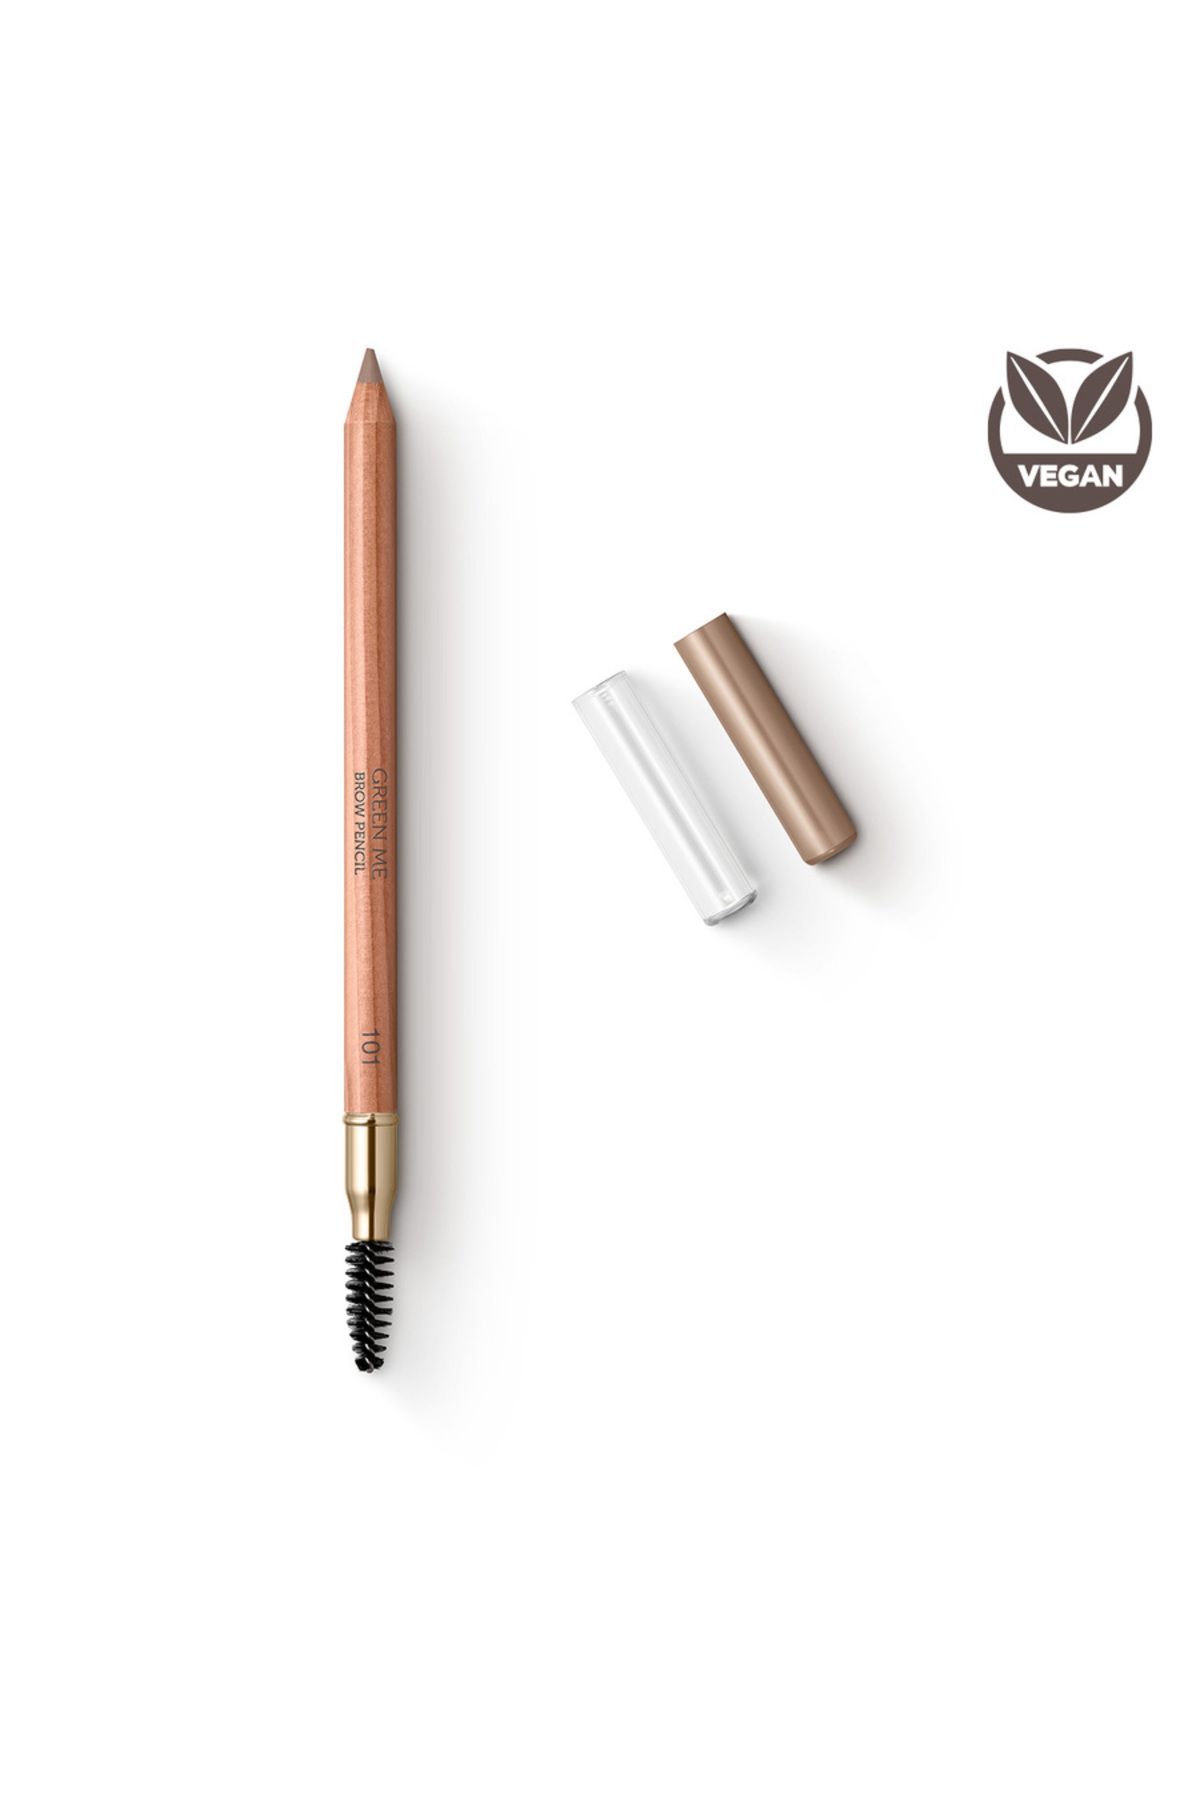 KIKO قلم ابرو مداد ابروی سبز شماره 102 شکلات شیری